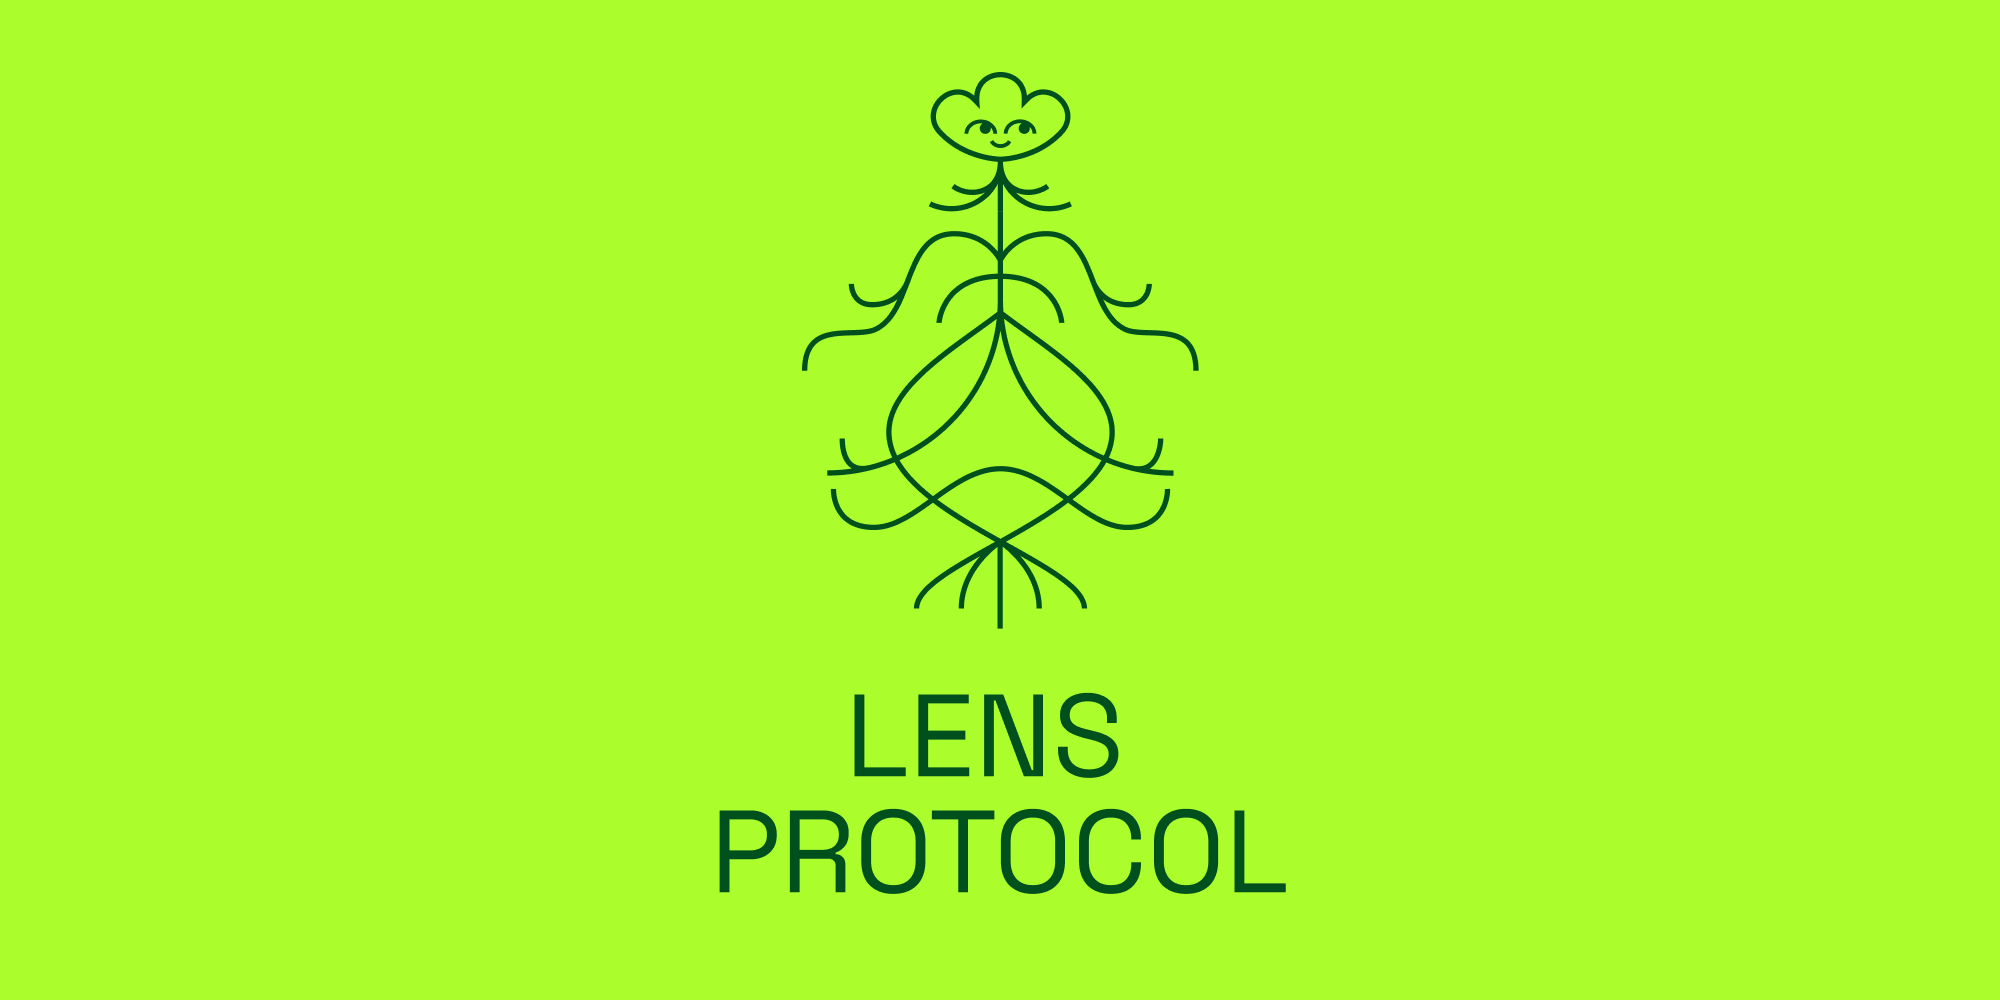 Lens Protocol tạm dừng các dịch vụ do gặp vấn đề về transaction - CoinViet